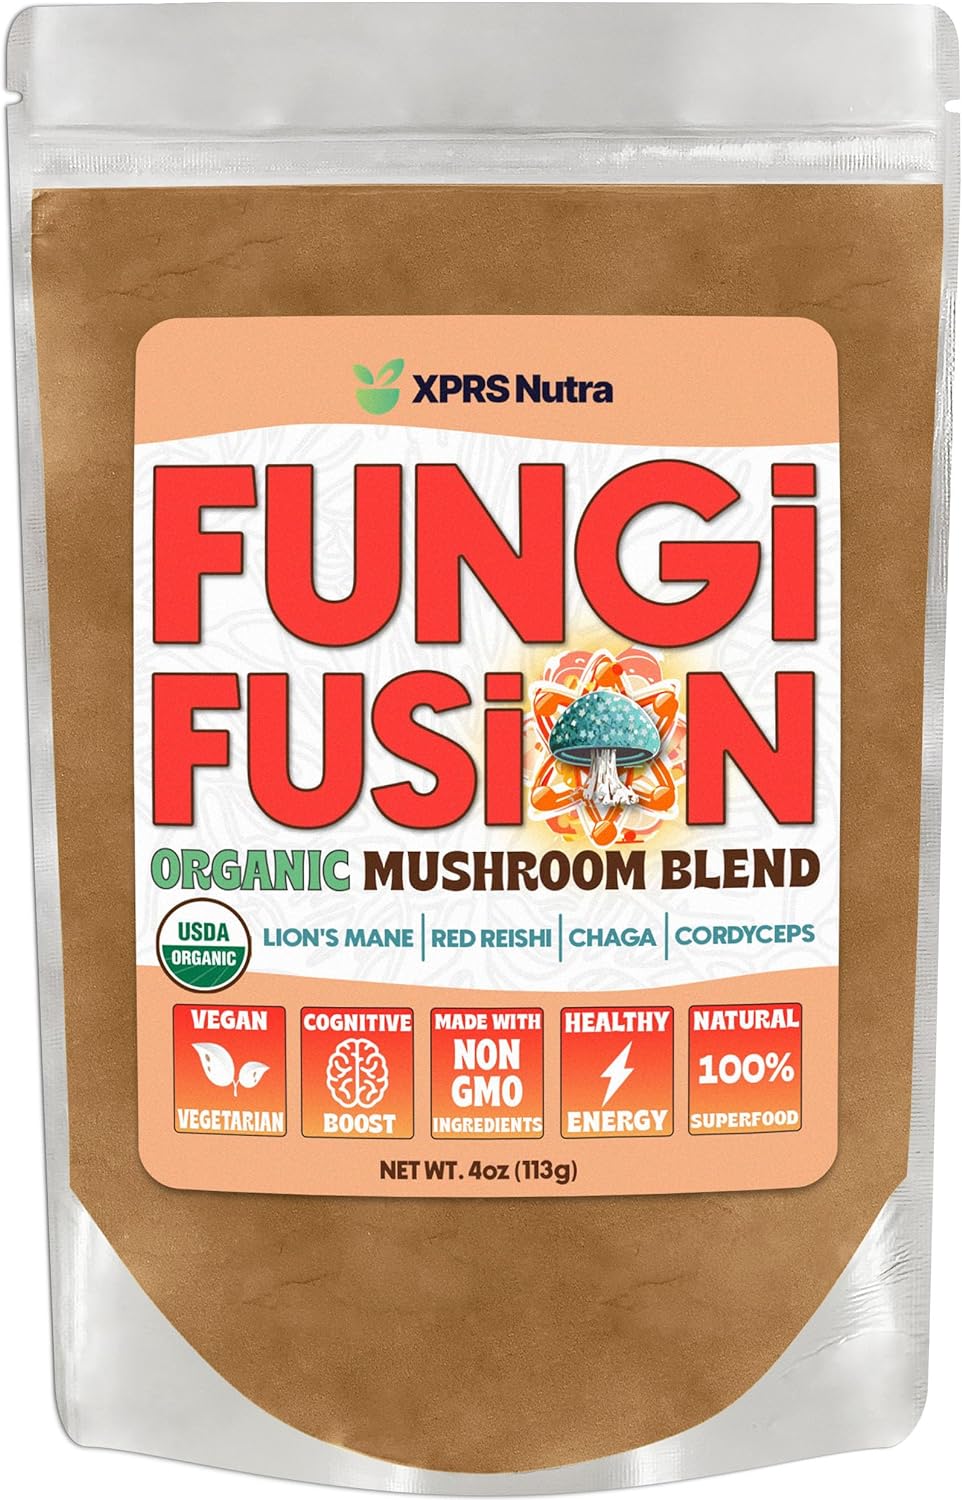 Fungi Fusion Organic Mushroom Powder Blend of Lion's Mane, Reishi, Chaga and Cordyceps